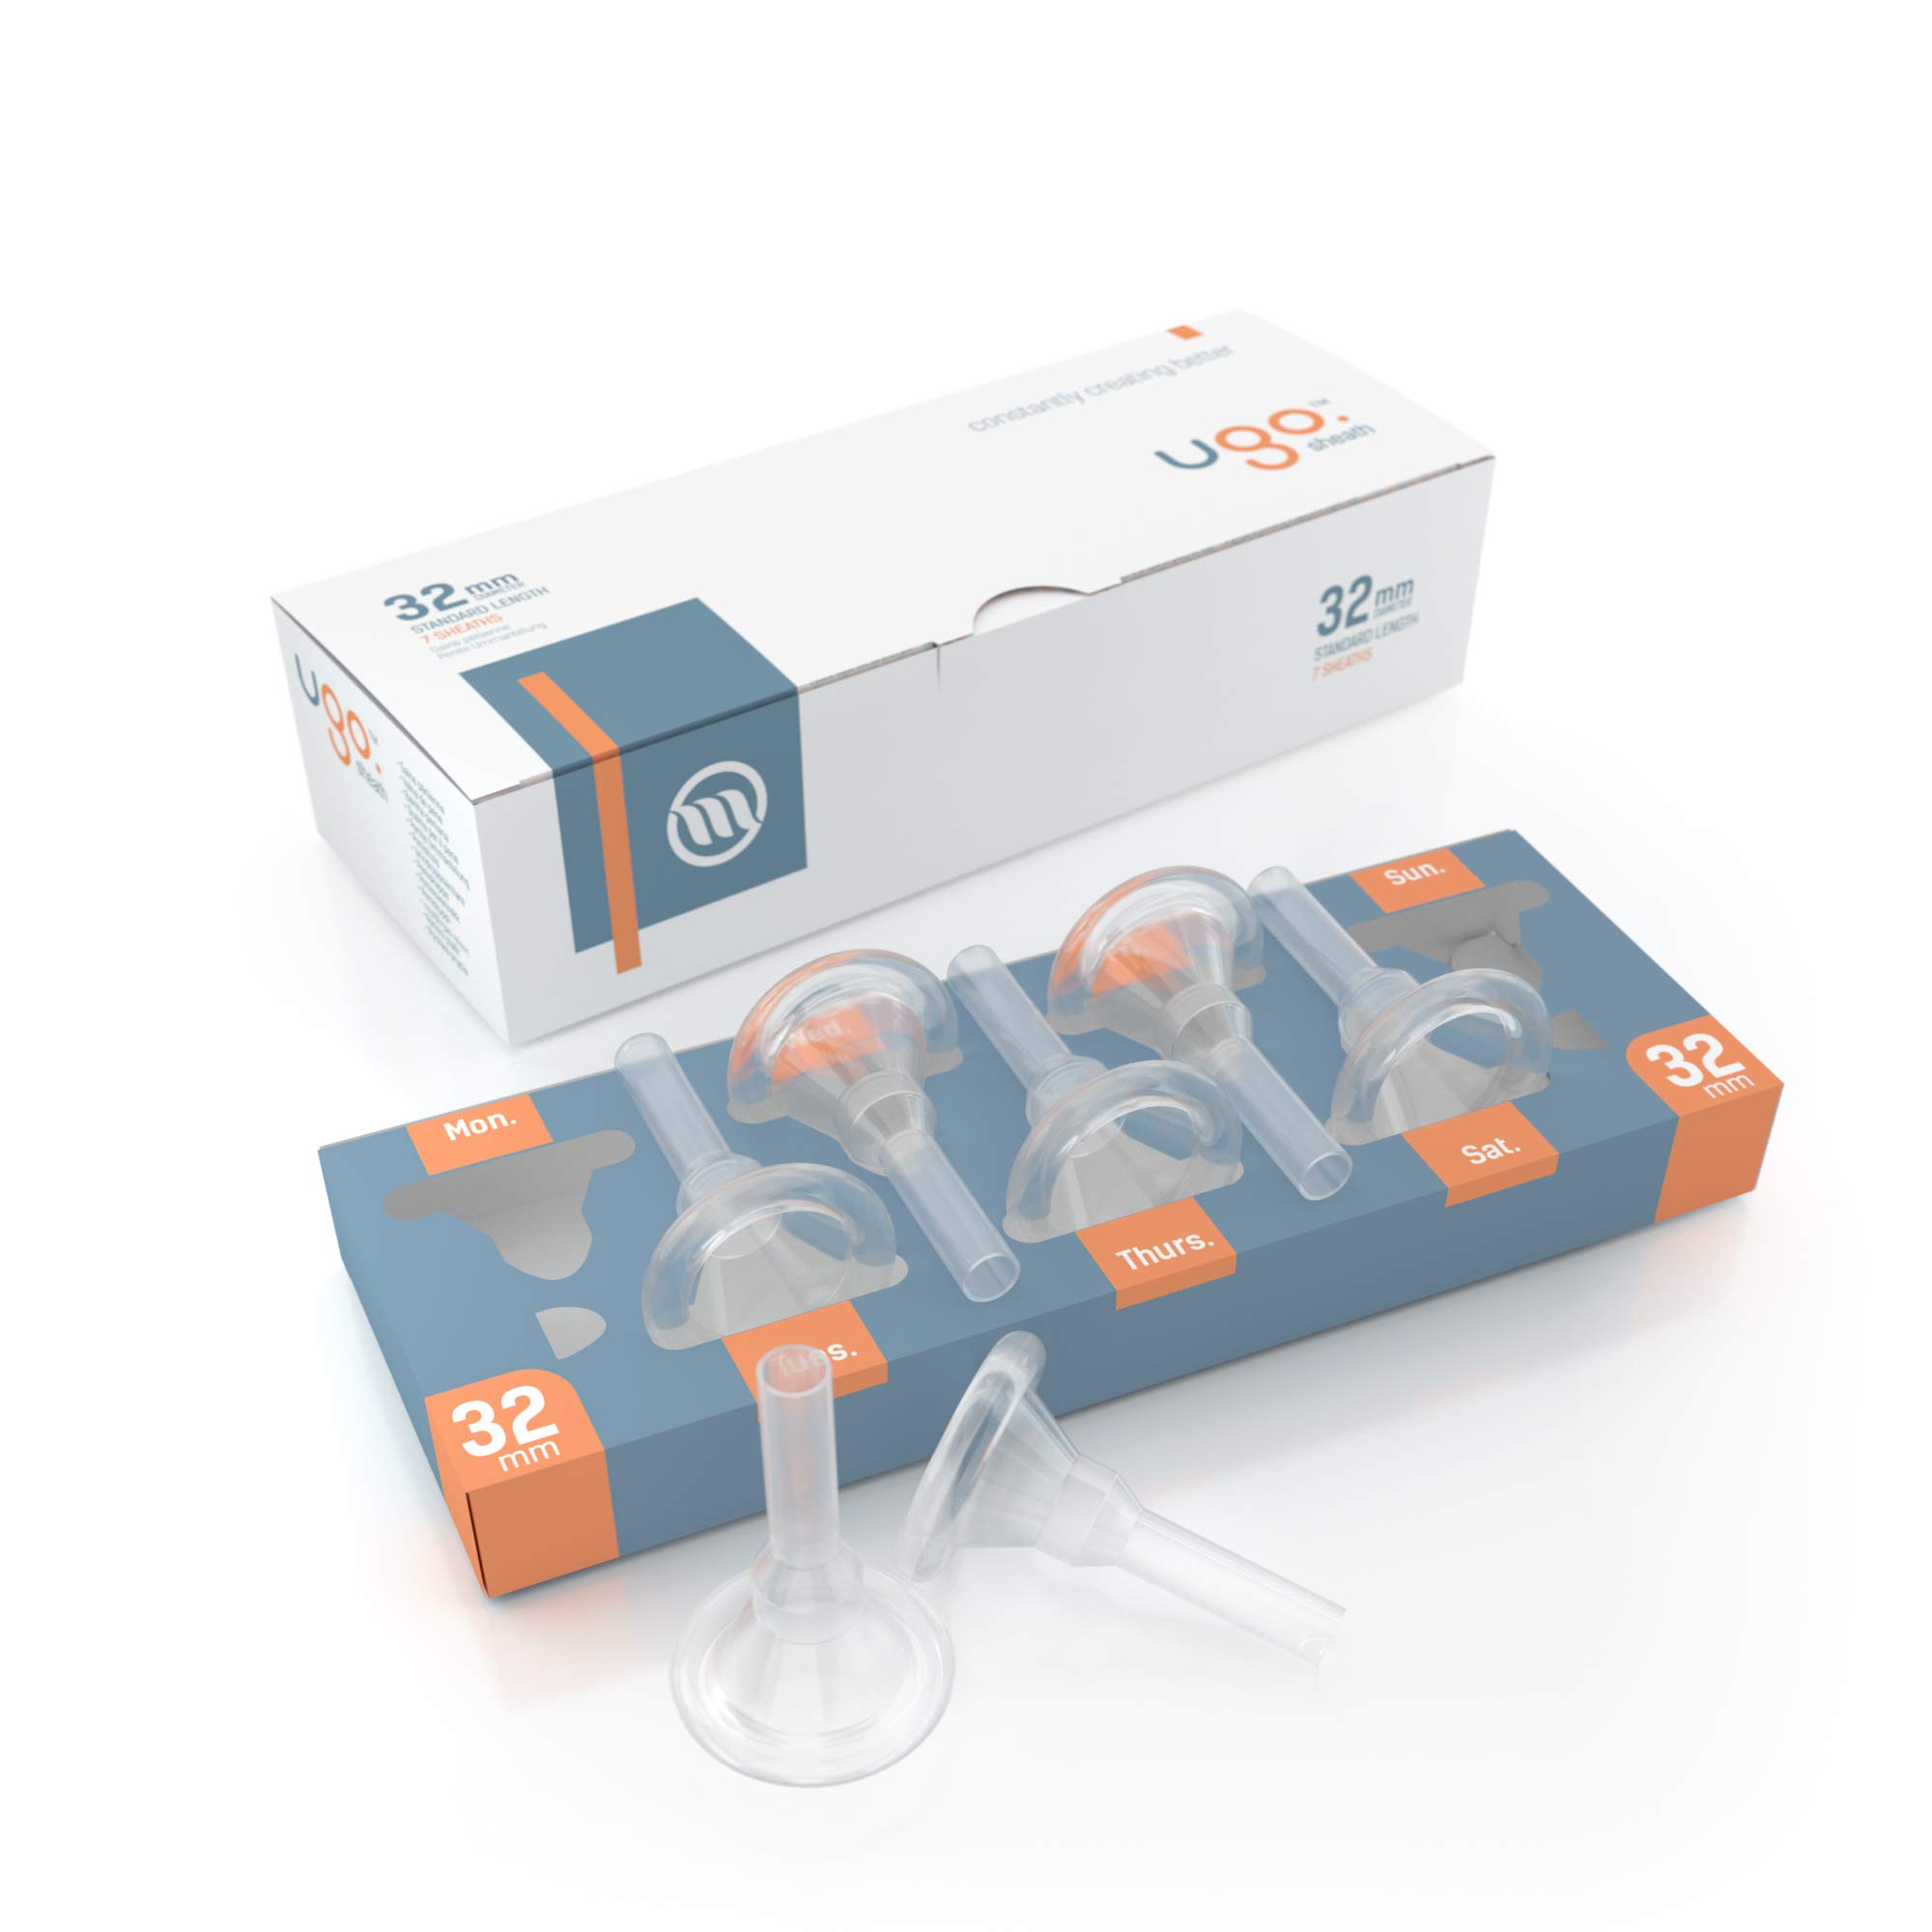 Ugo-Scheide (x28) - 1-Monats-Versorgung mit Kondomen für externe Urin-Katheter - selbstklebend und latexfrei (Länge - Standard, Durchmesser - 32mm)